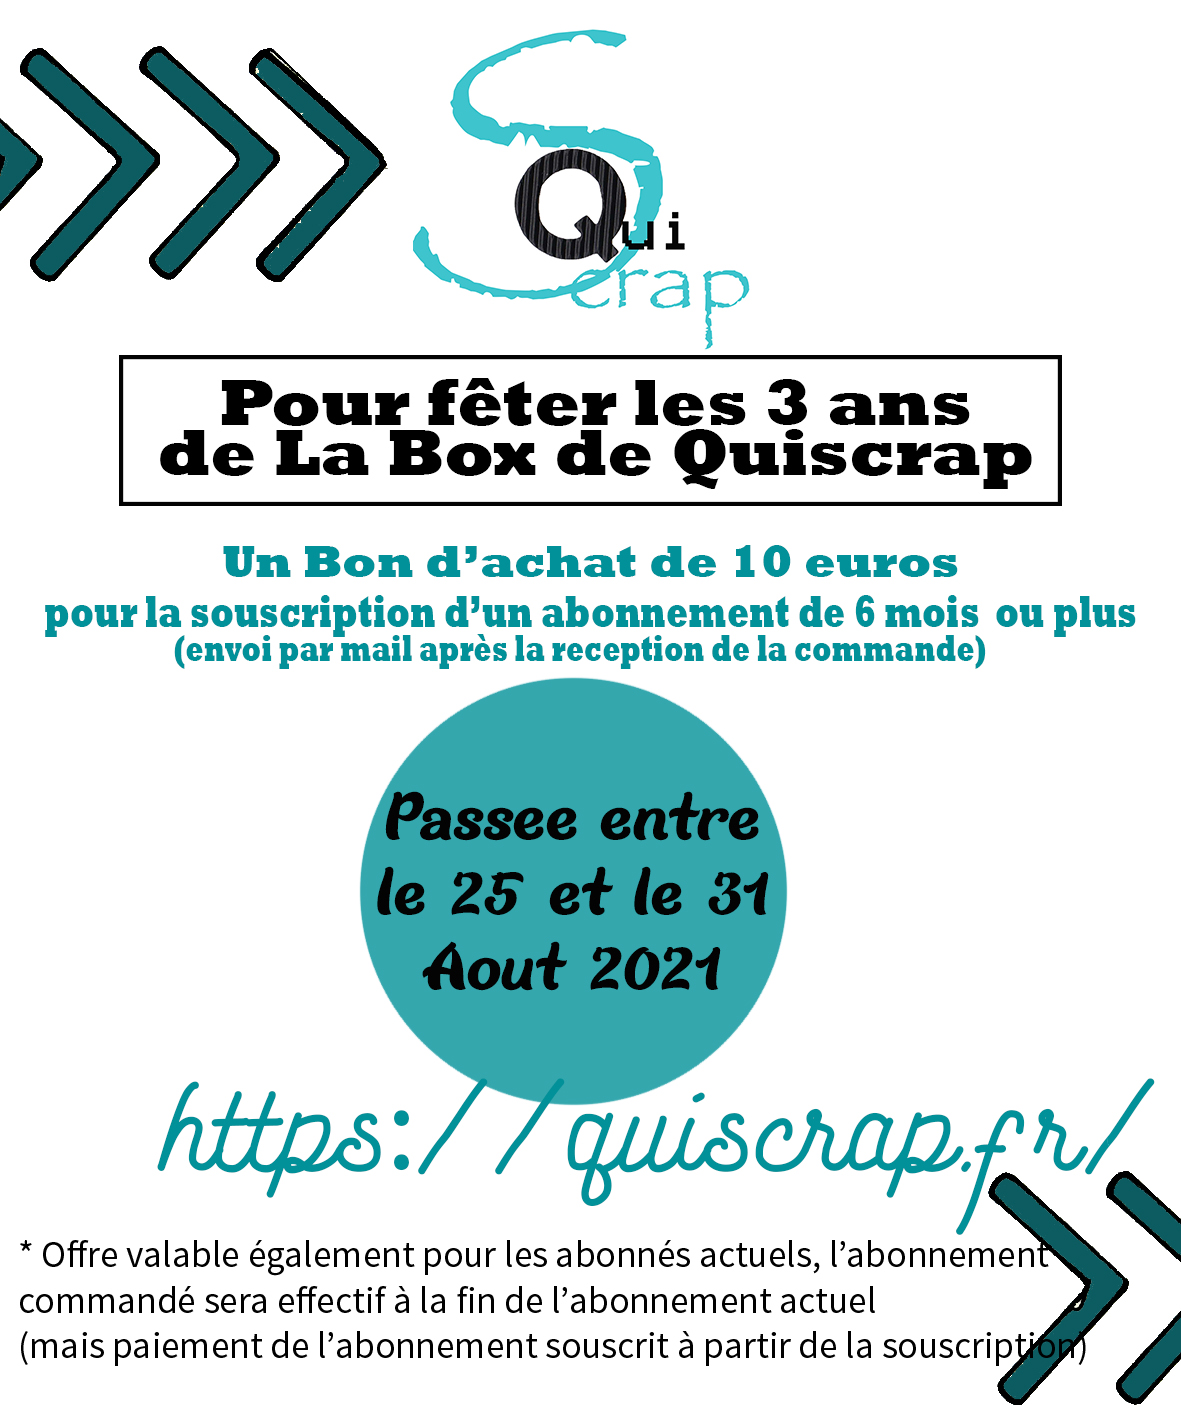 You are currently viewing La Box de Quiscrap fête ses 3 ans!